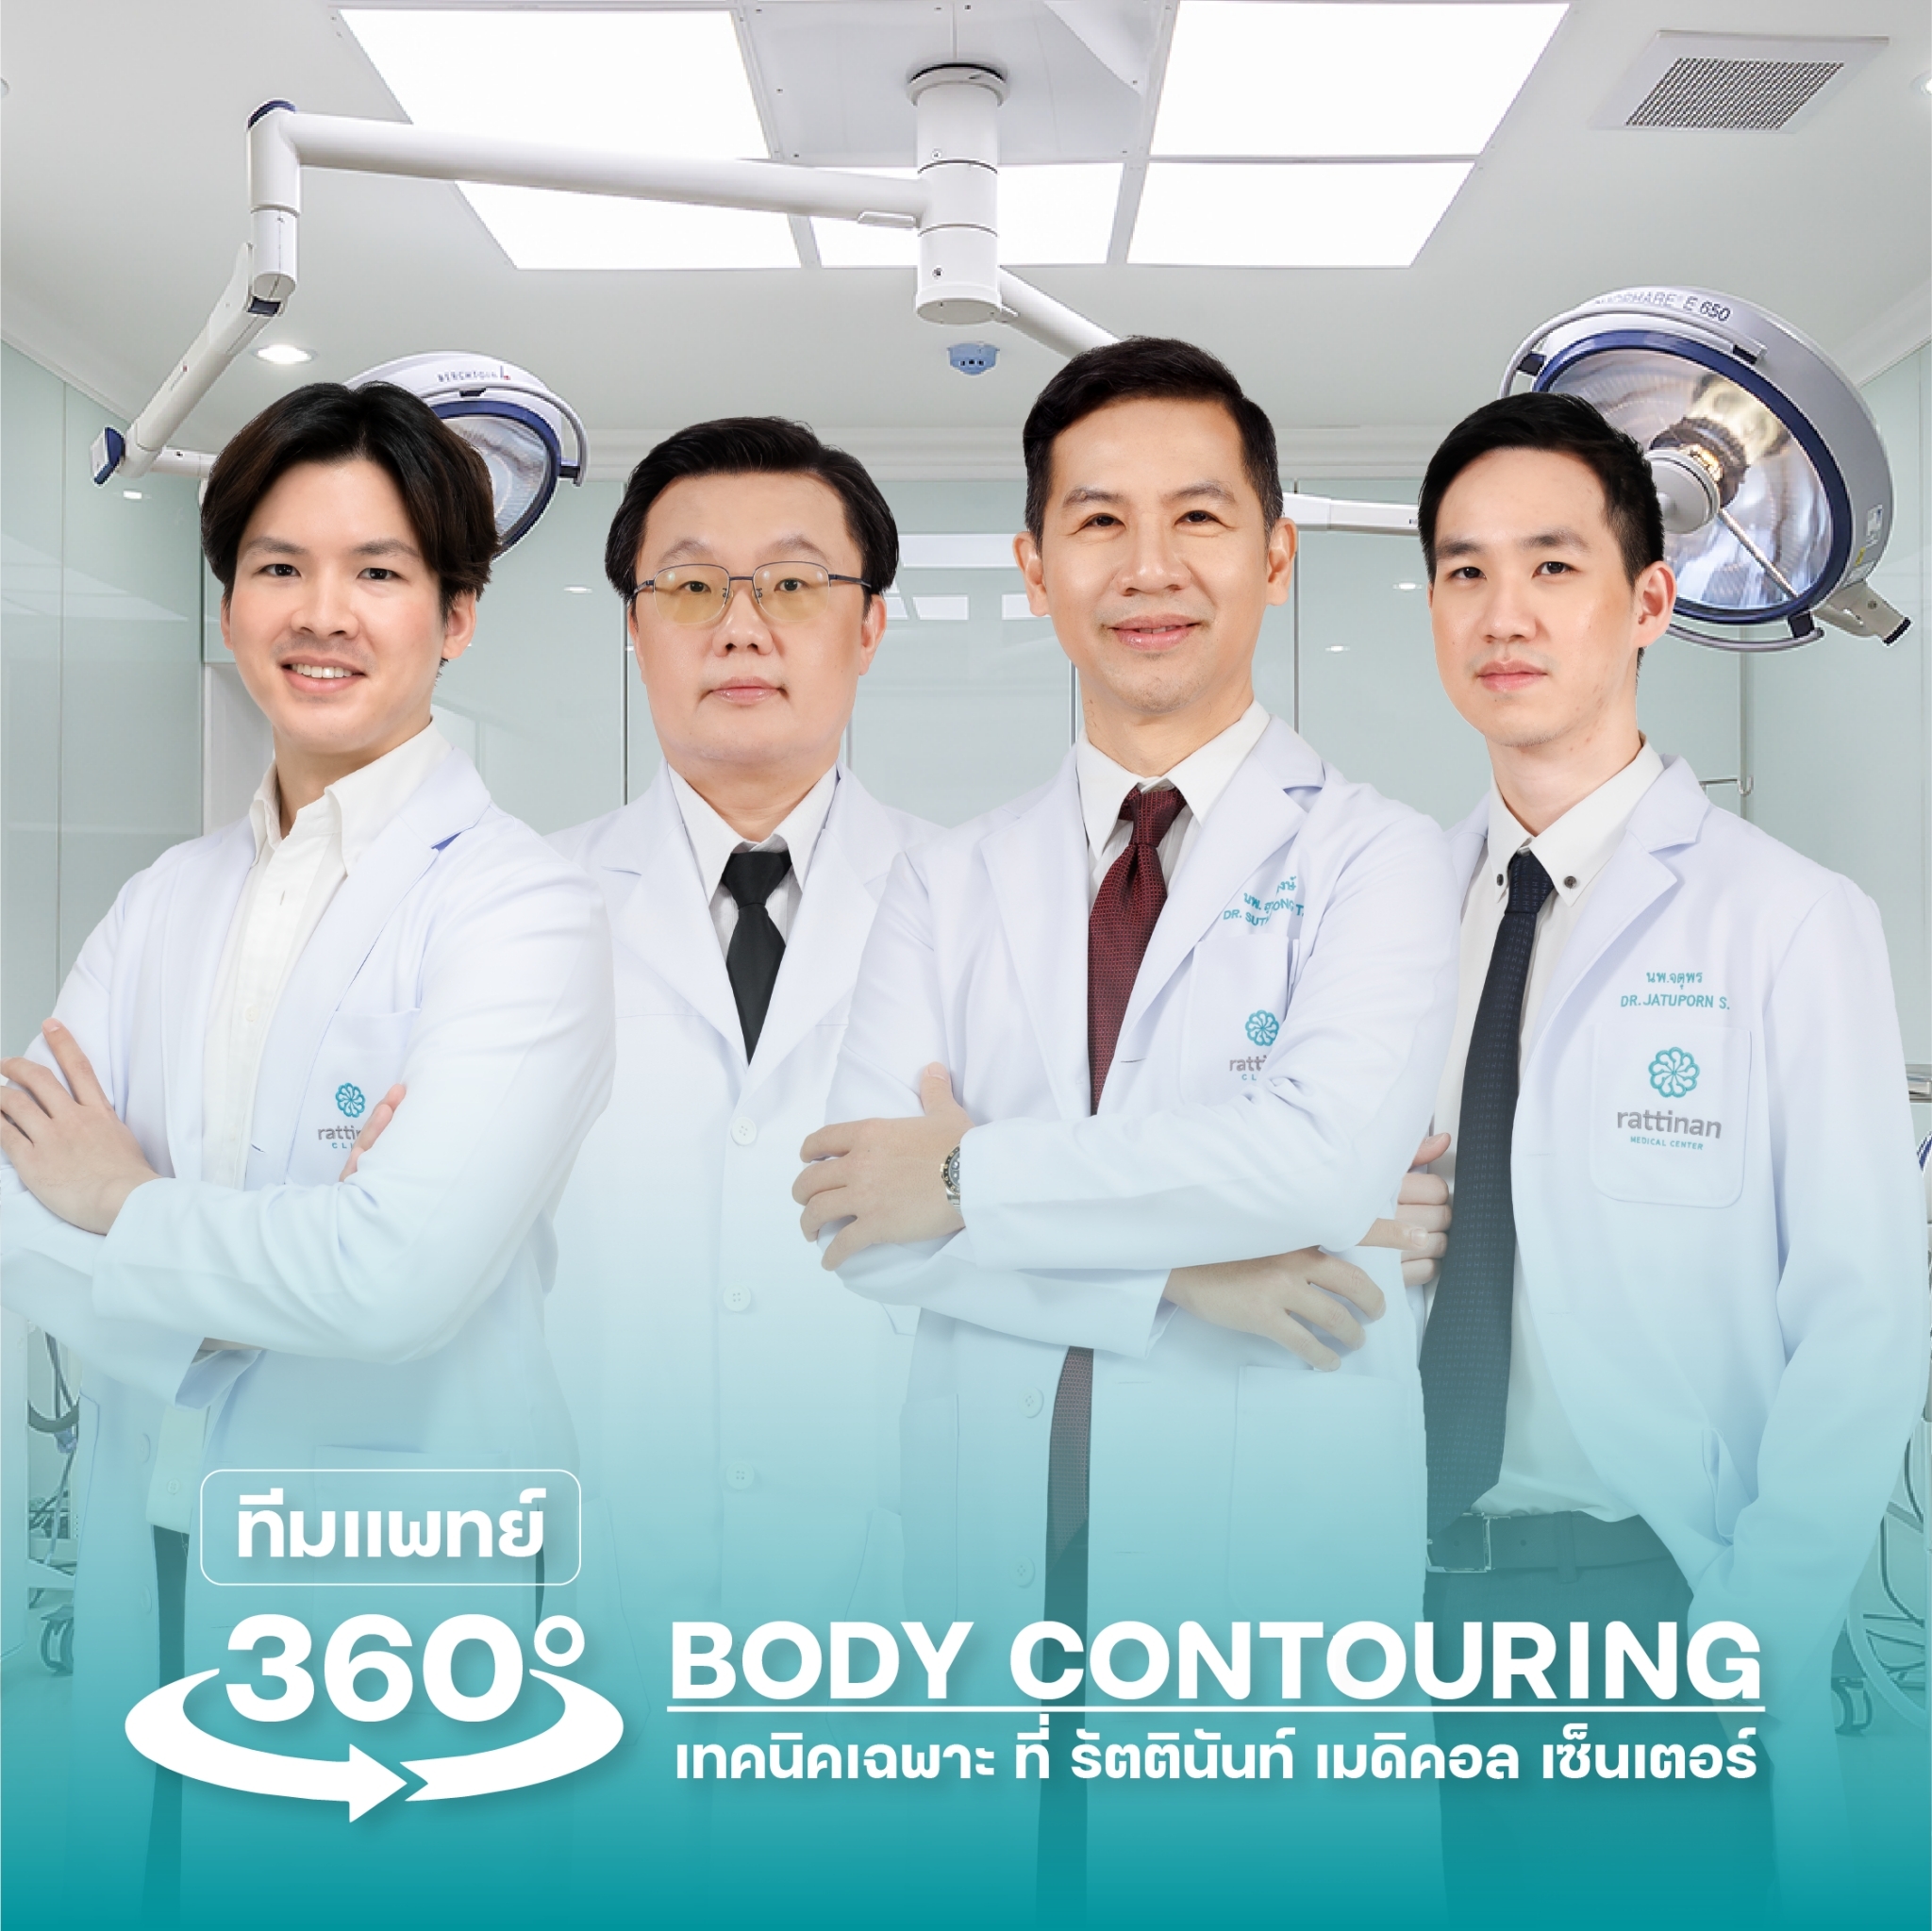 ทีมแพทย์ 360 Body Contouring